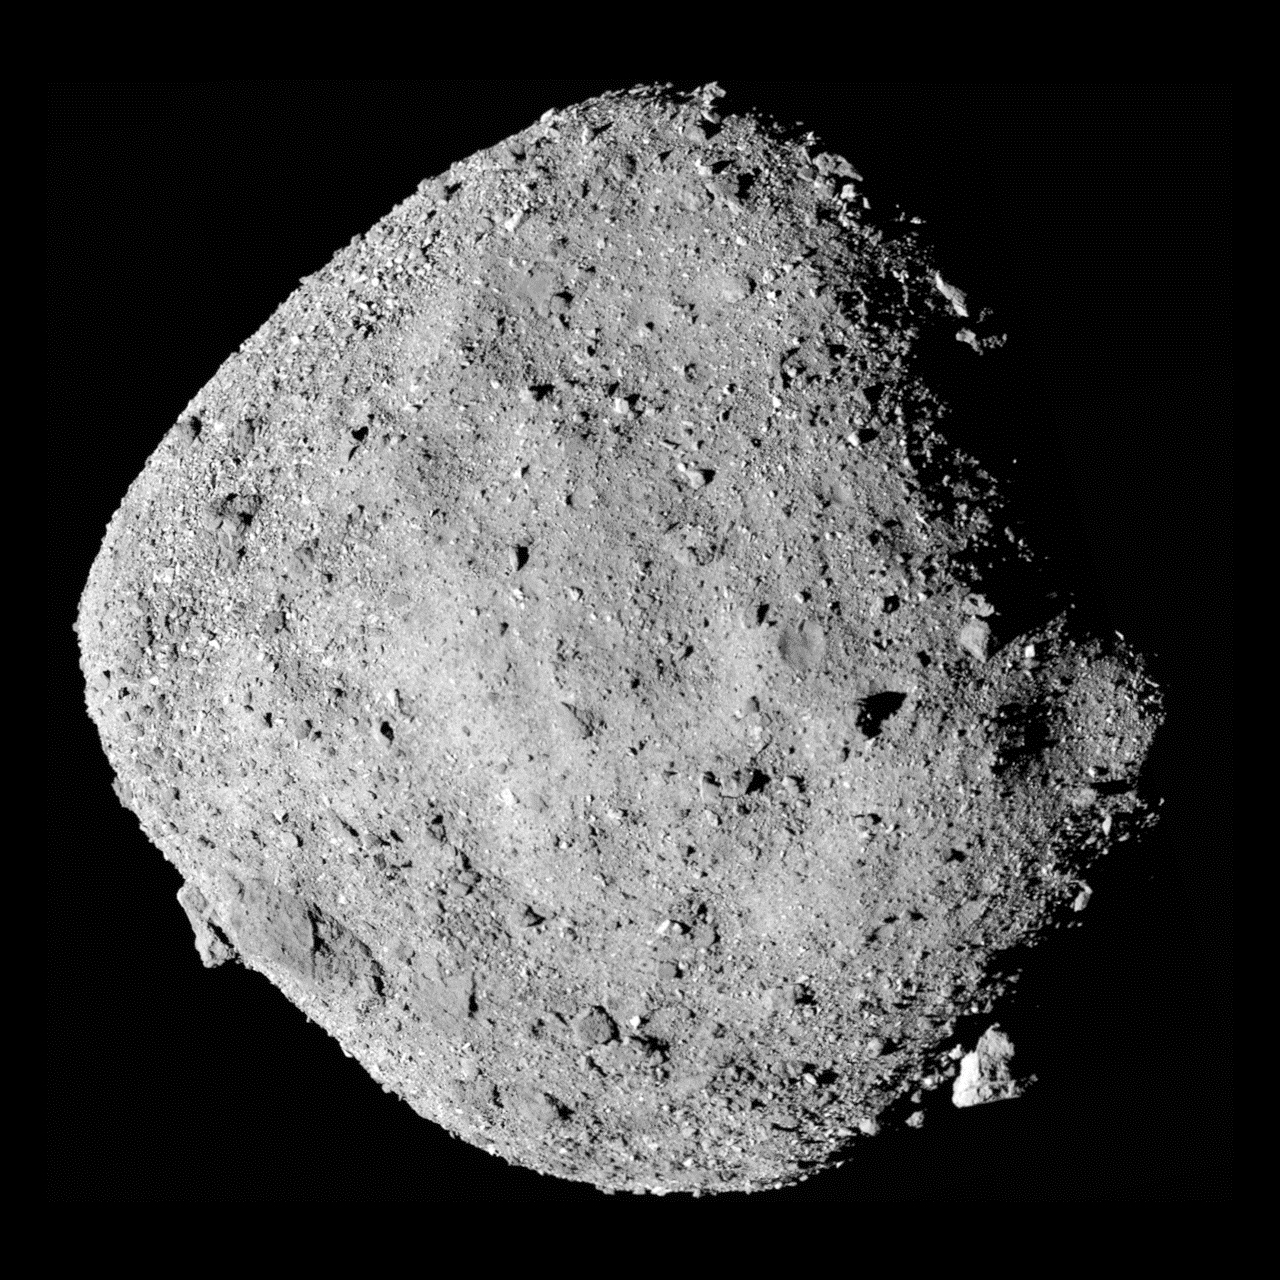 NASA впервые доставило на Землю образцы астероида. Миссия длилась семь лет – фото, видео